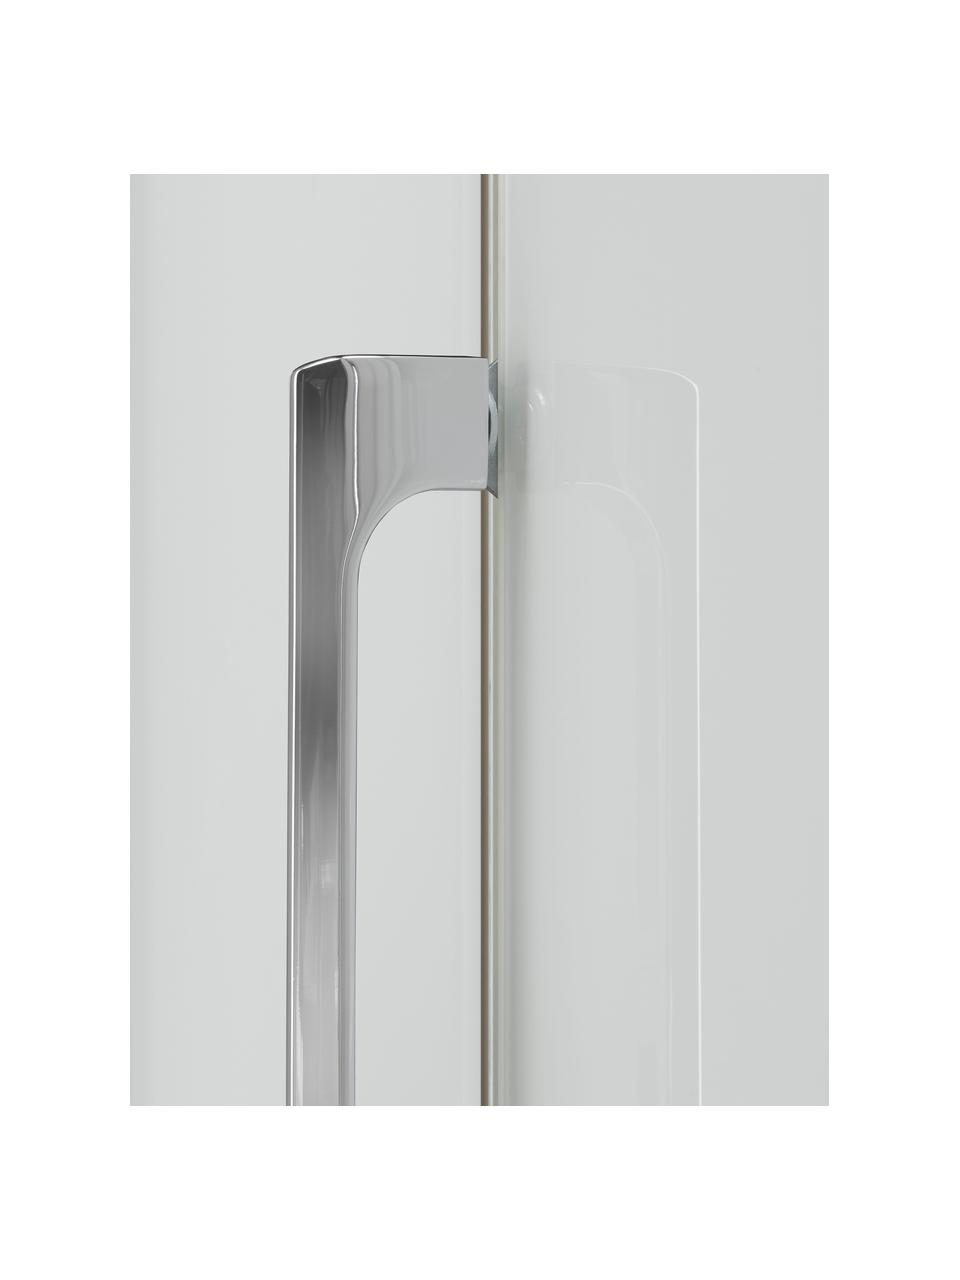 Draaideurkast Monaco met spiegeldeuren, 5 deuren, Handvatten: gecoat metaal, Wit, met spiegeldeuren, B 247 x H 216 cm